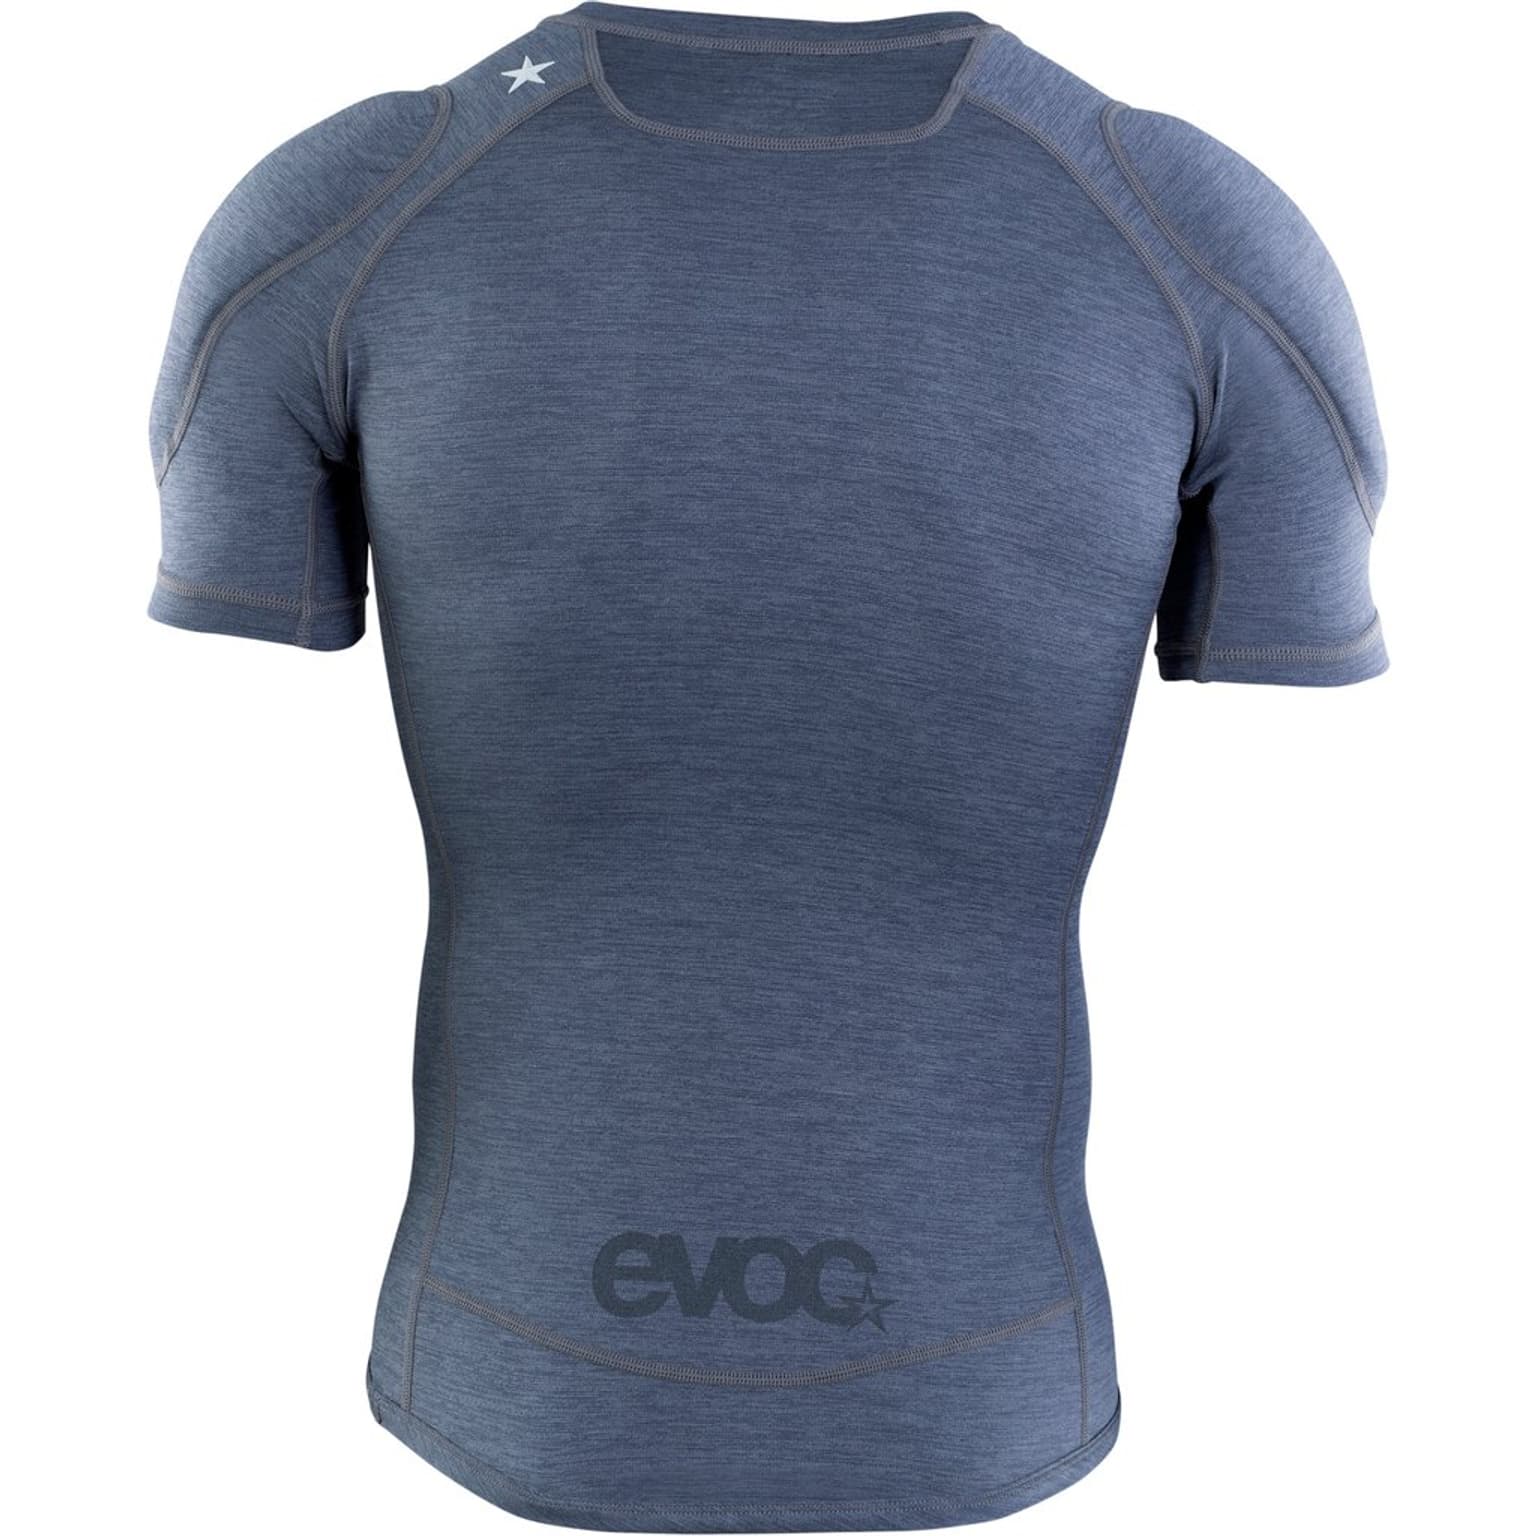 Evoc Evoc Enduro Shirt Protections gris-fonce 2